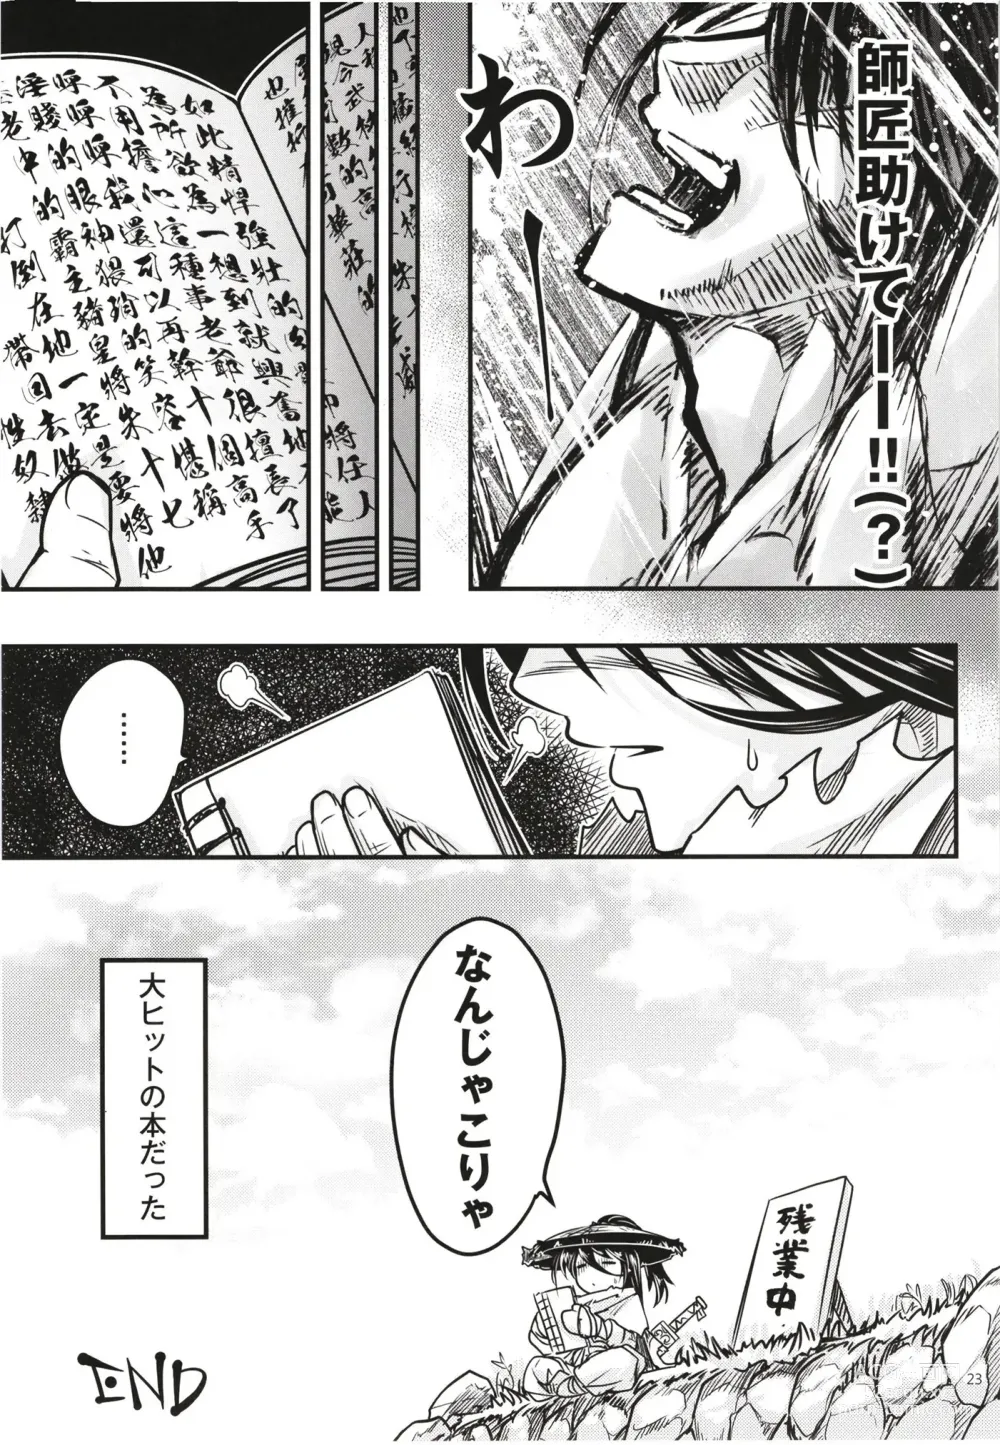 Page 25 of doujinshi Hyakkasou 12 <<Jitsuroku Makyou Hyakkasou Kikou>>